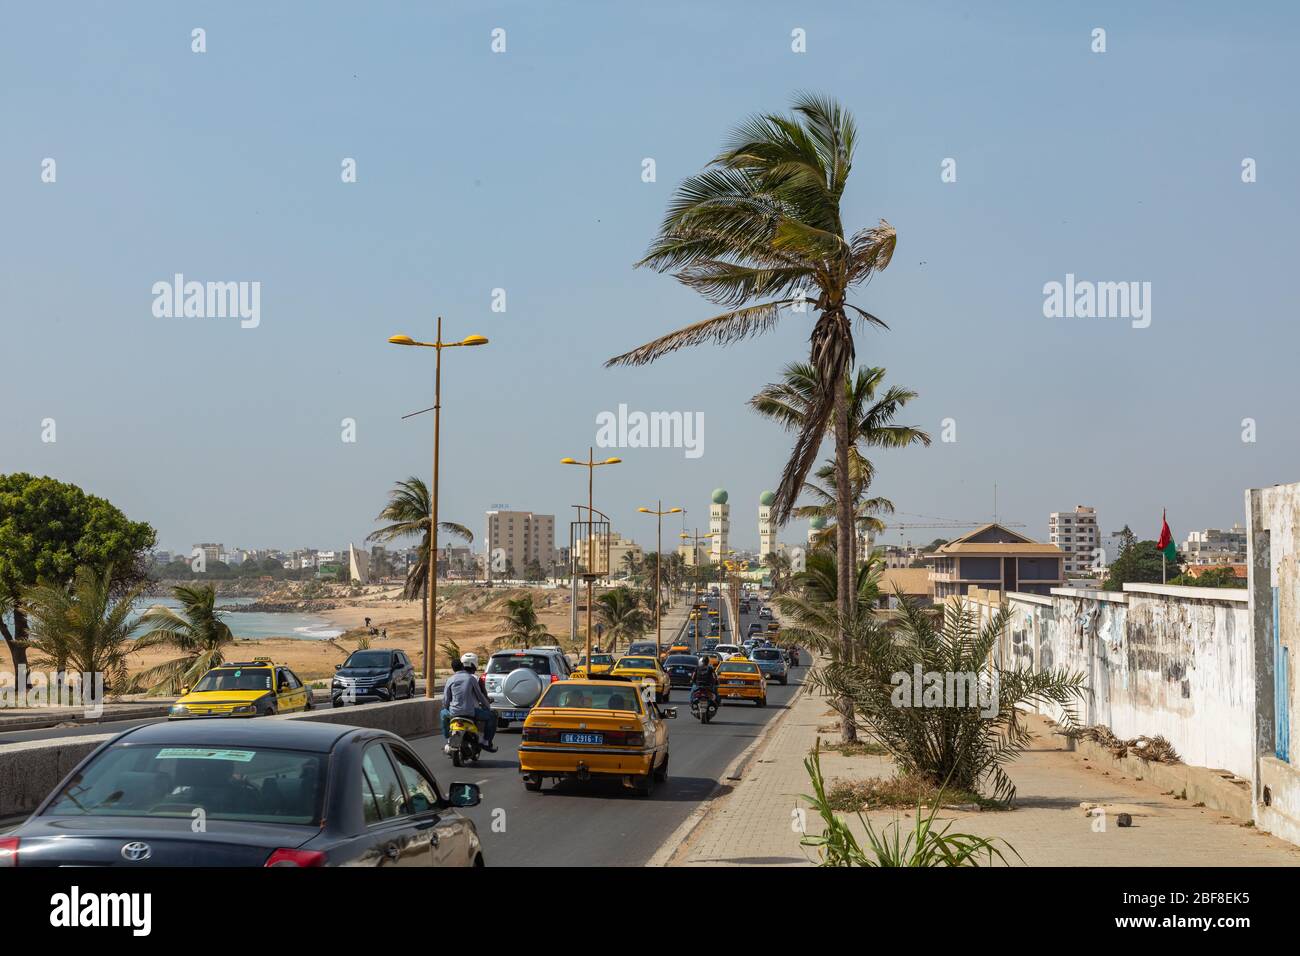 DAKAR, SENEGAL - 11 NOVEMBRE 2019: Persone che lavorano e traffico a Dakar, capitale del Senegal, Africa occidentale. Foto Stock